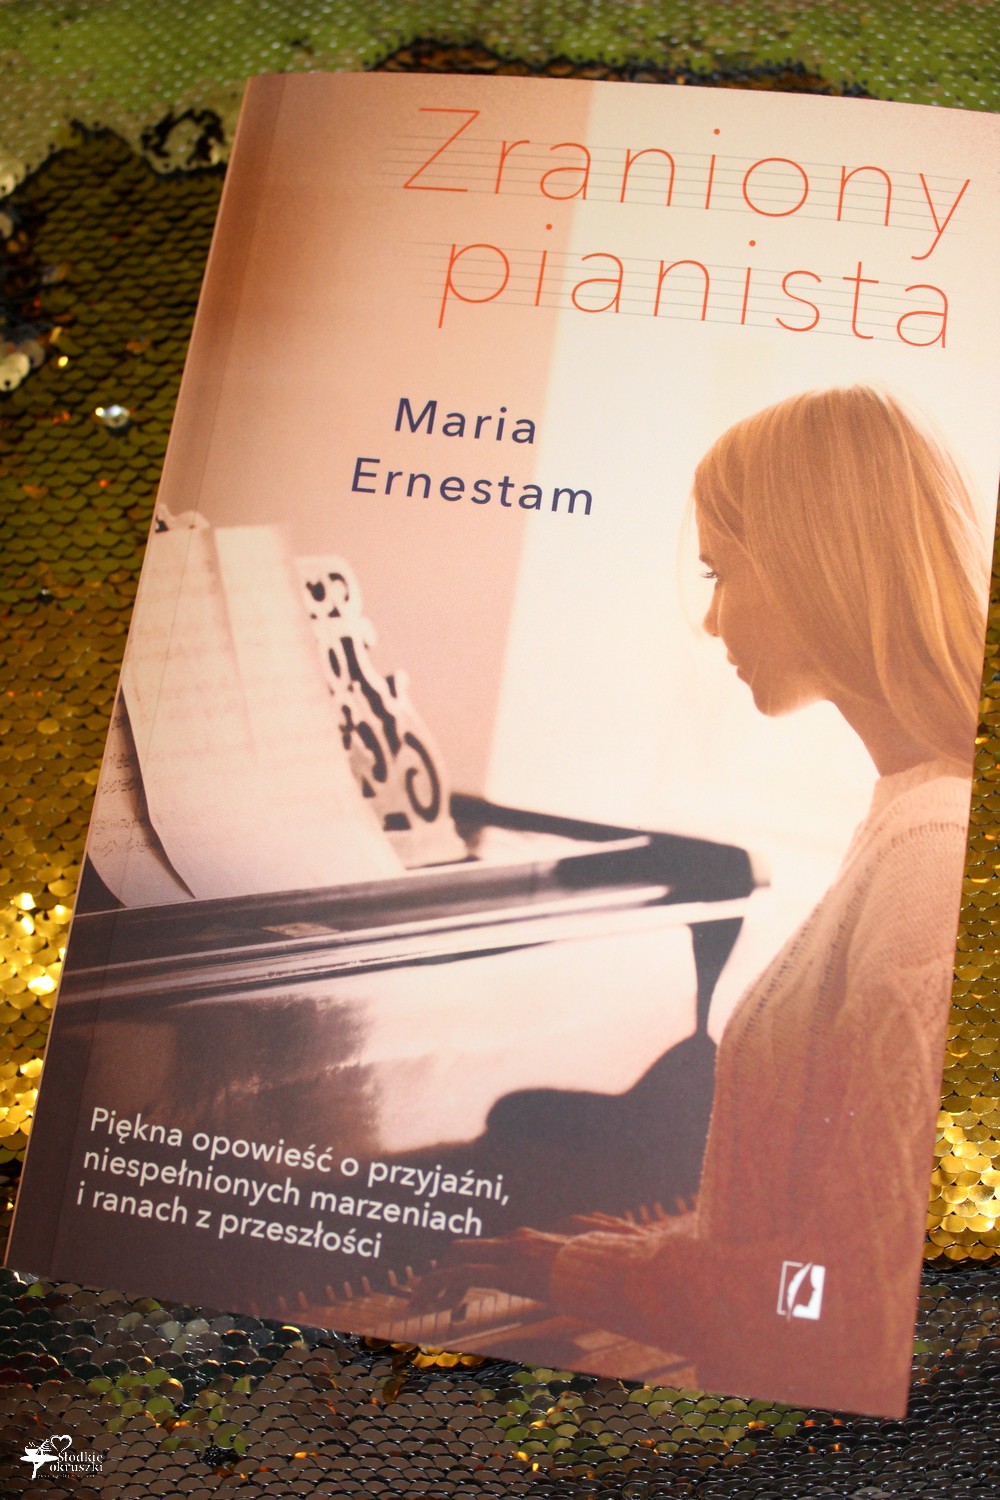 Zraniony pianista Maria Ernestam - recenzja